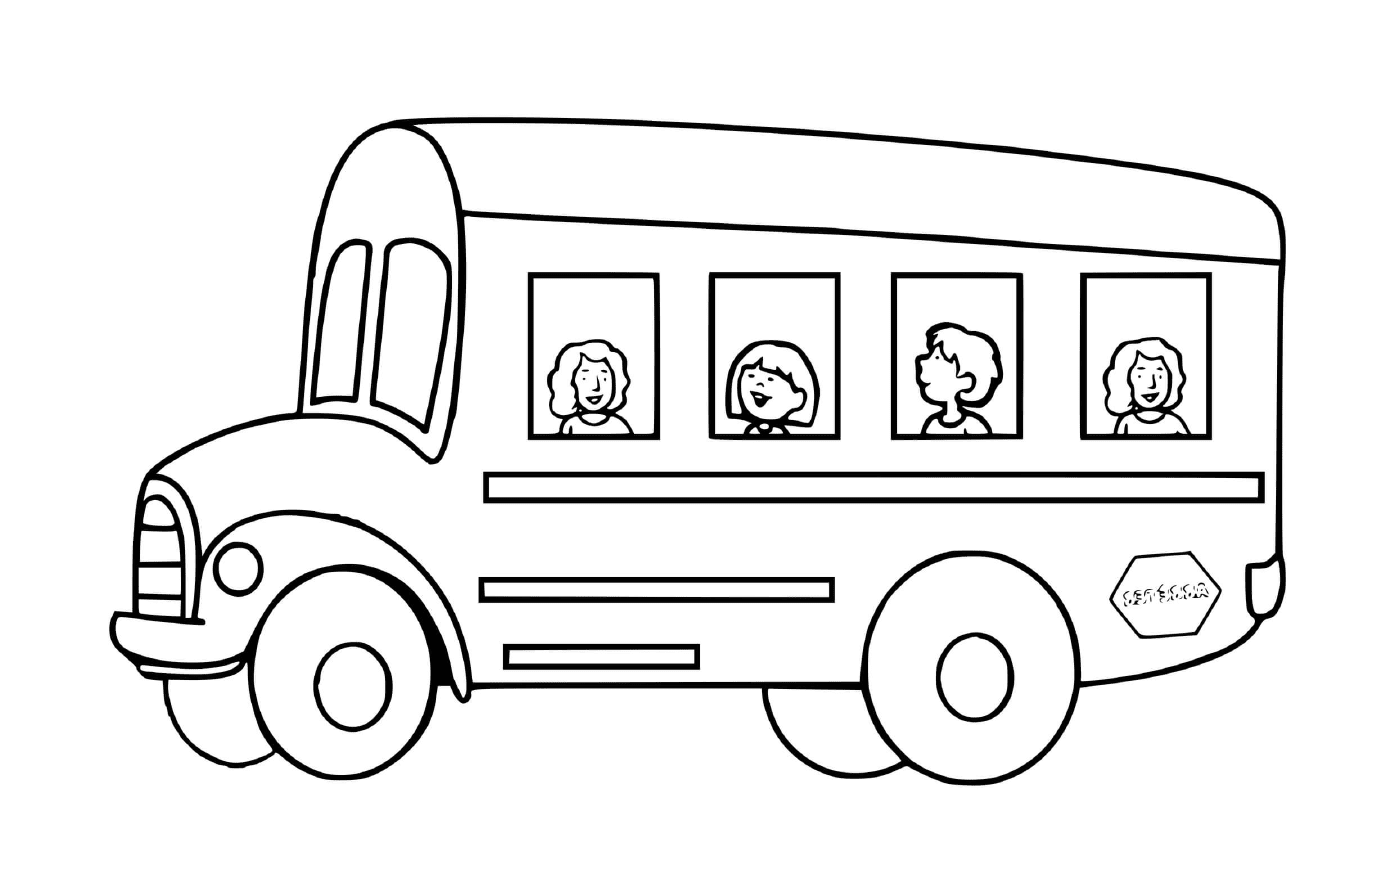  Transporte escolar para niños: el autobús 